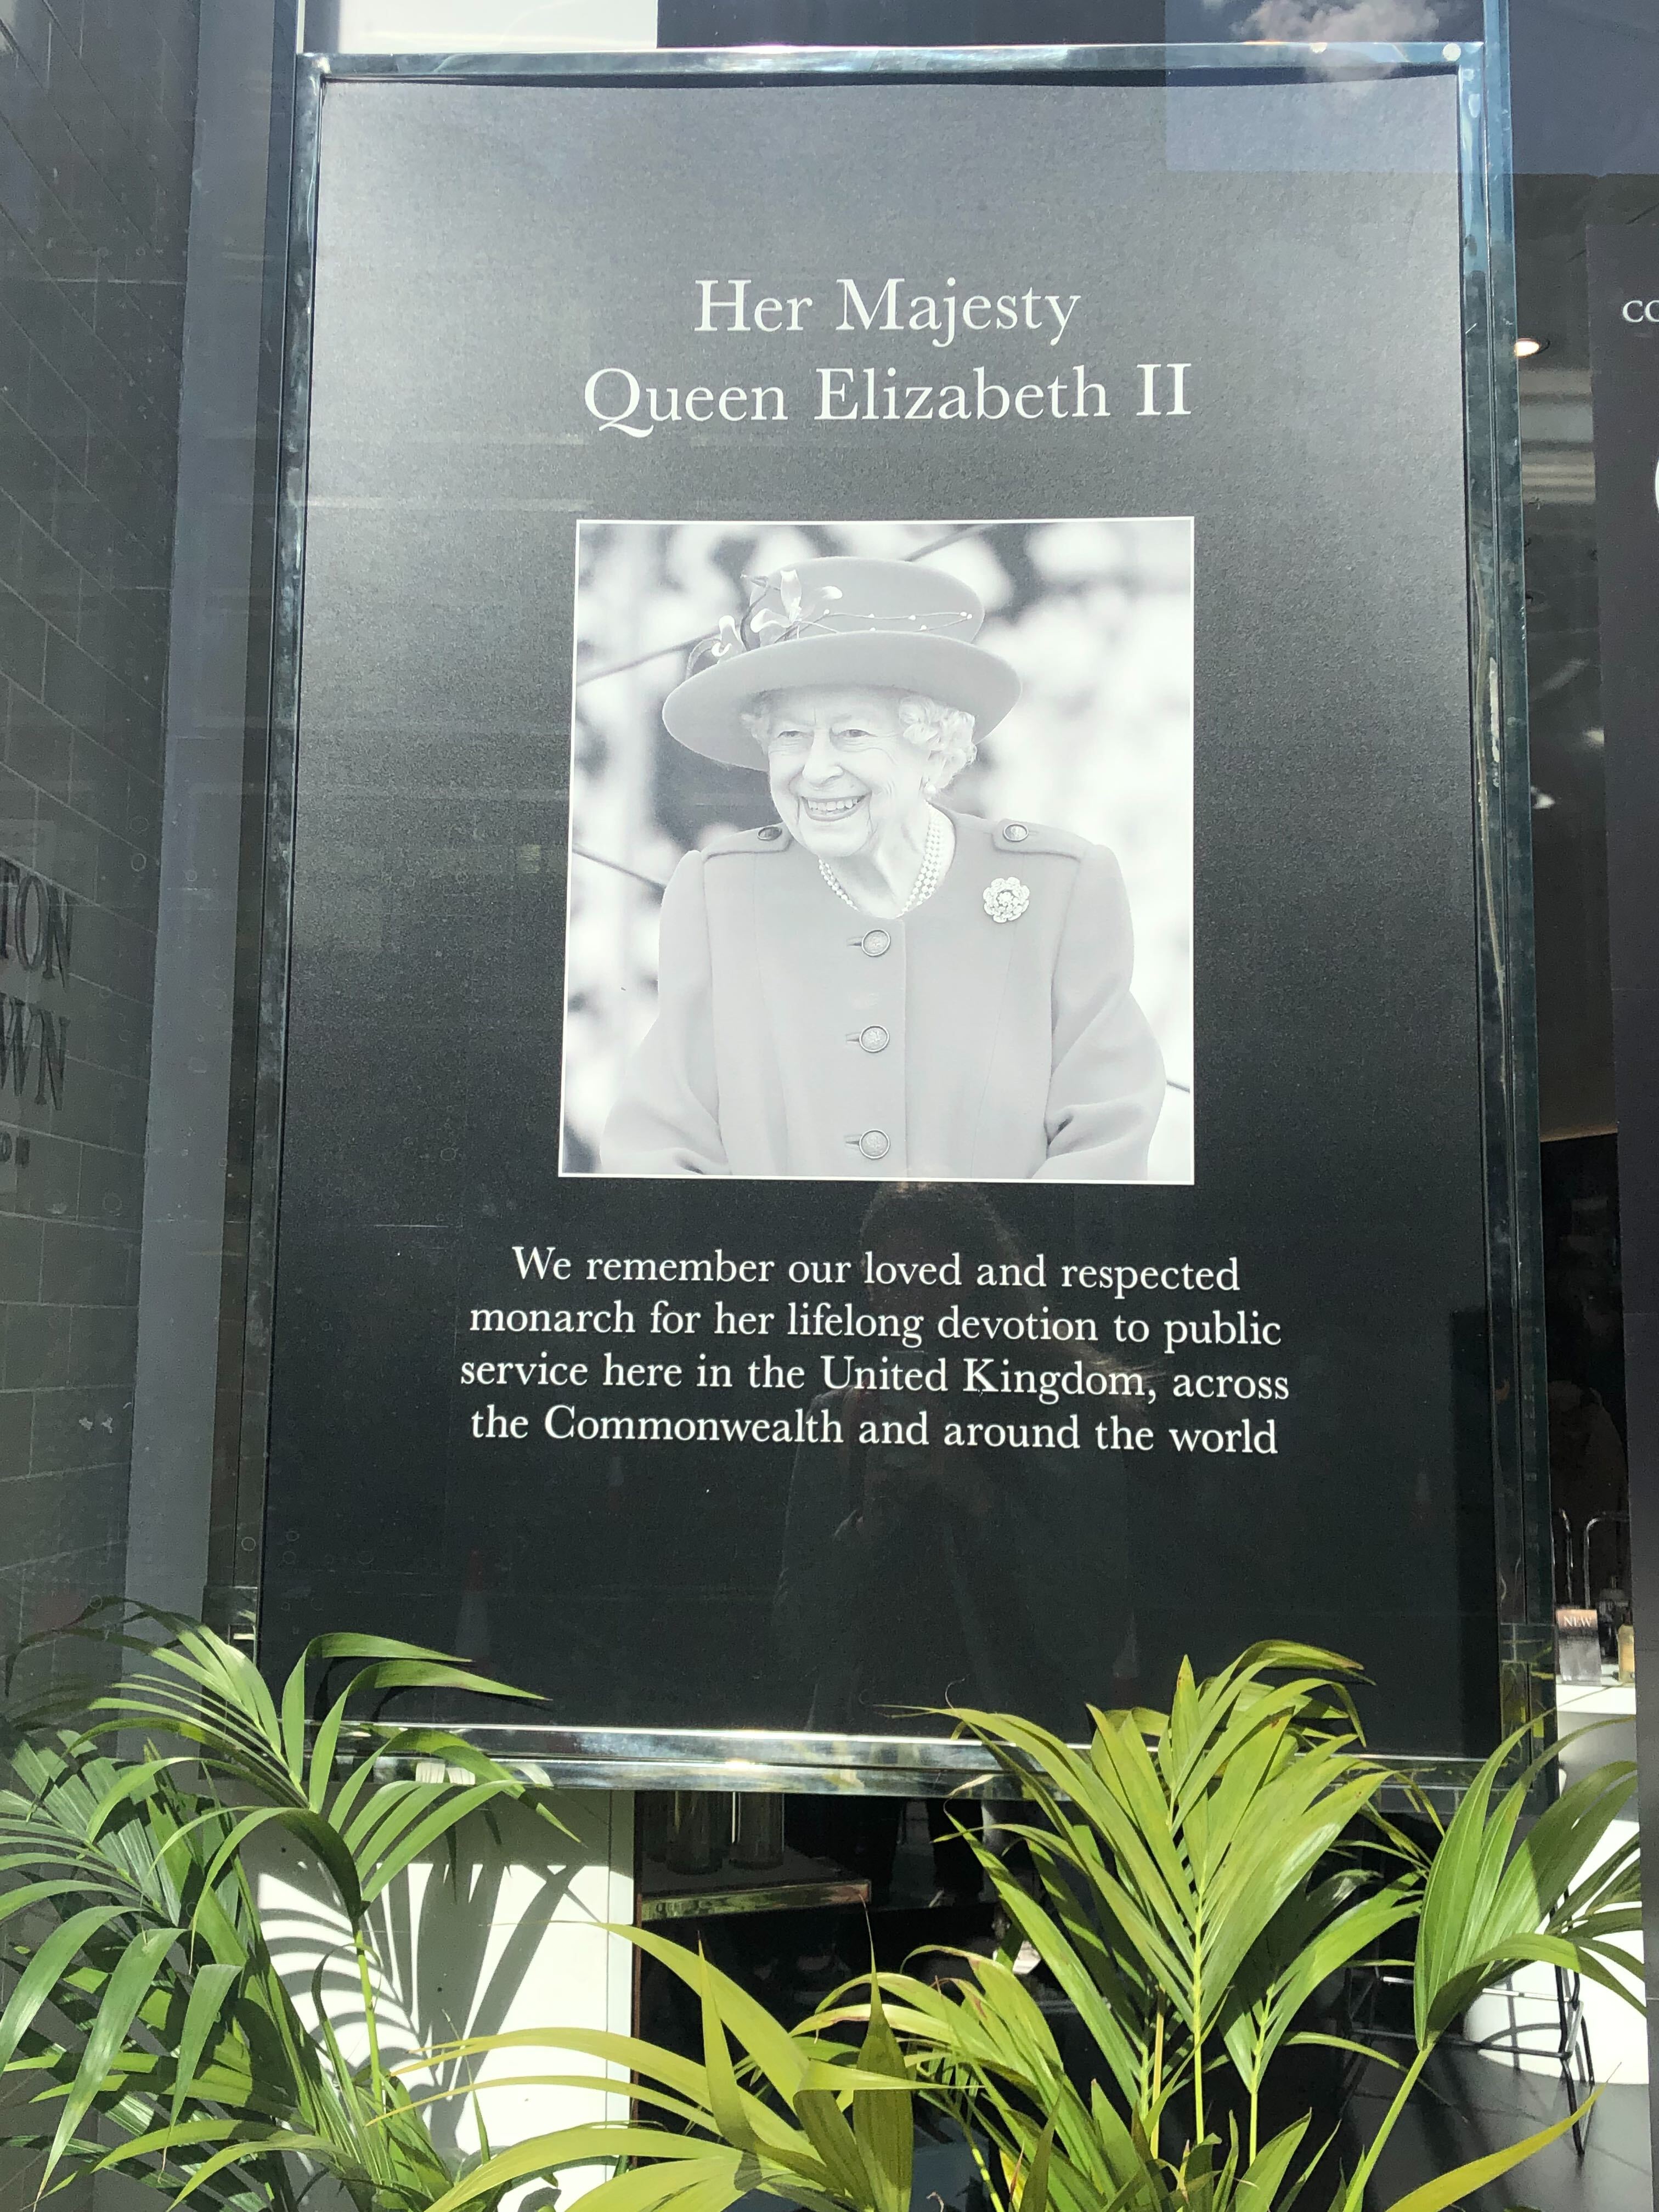 In diesem Schaufenster heißt es: "Wir gedenken unserer geliebten und geachteten Monarchin für ihr lebenslanges Engagement im öffentlichen Dienst hier im Vereinigten Königreich, im Commonwealth und in der ganzen Welt."